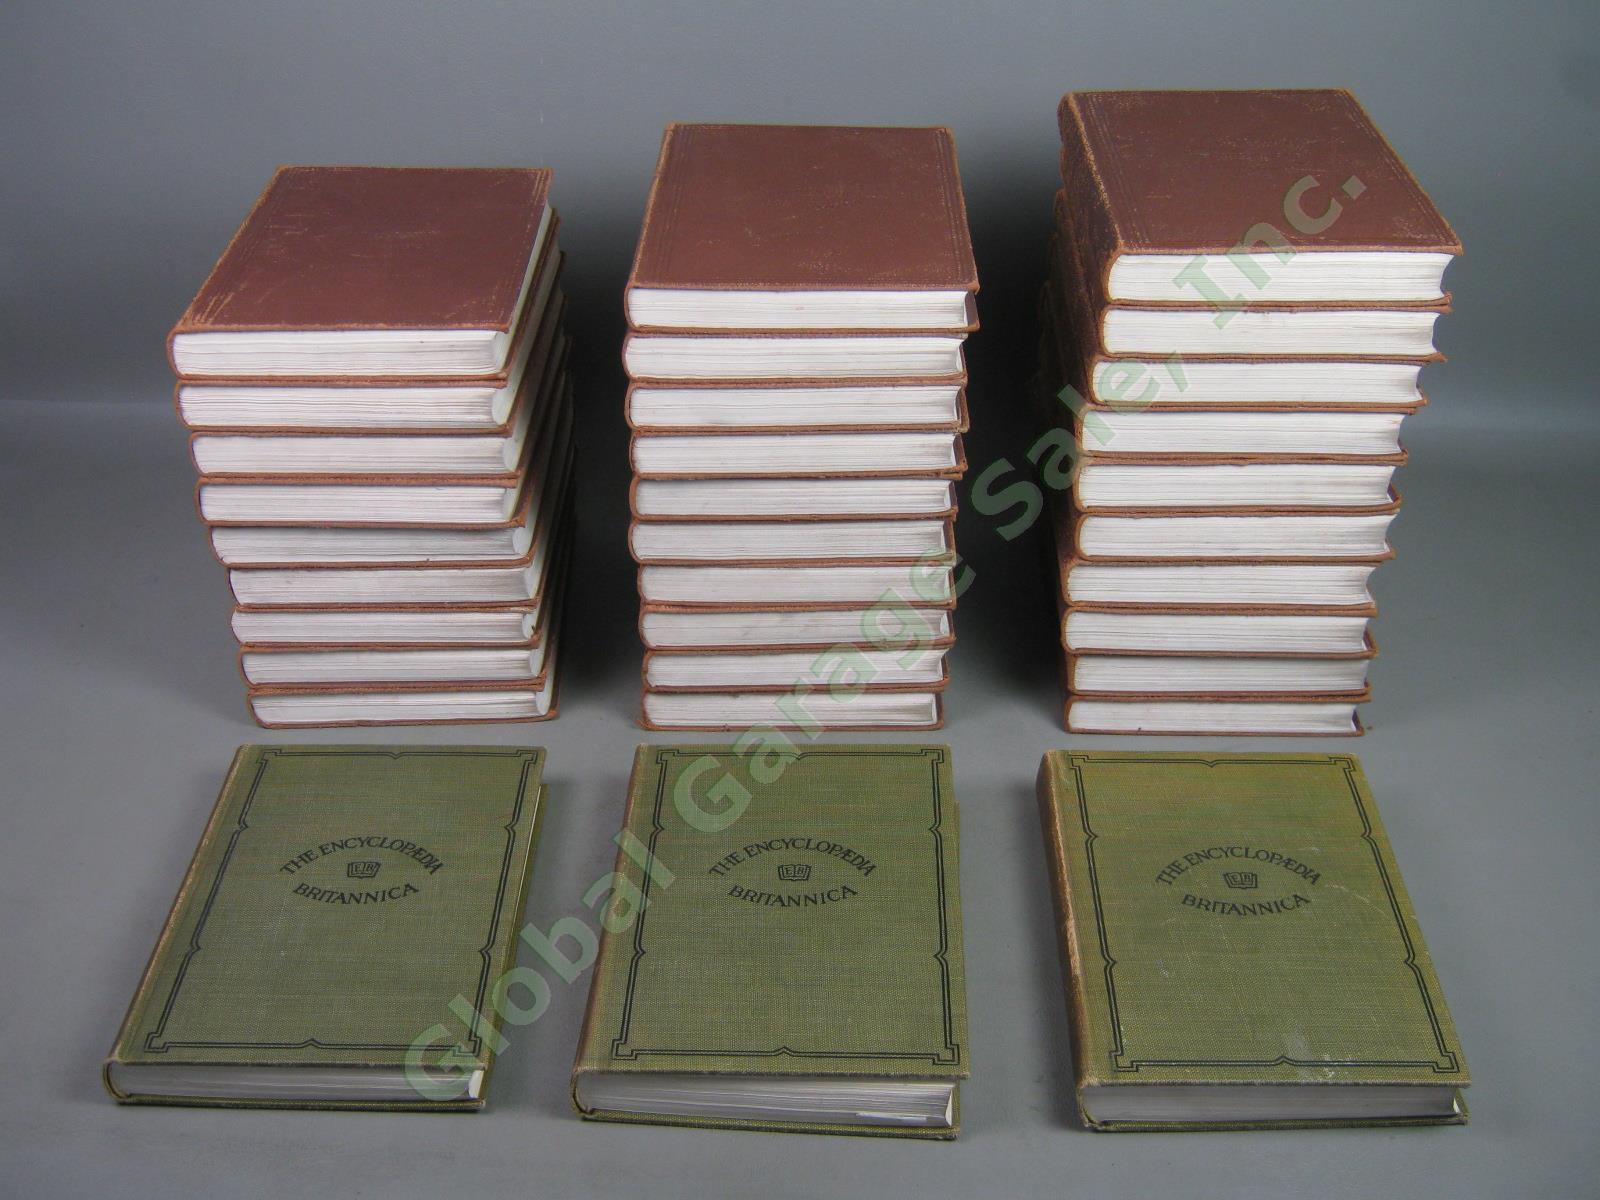 Encyclopedia Britannica 11th Edition Complete Handy 29 Vol Set 1910-1911 +3 1922 1